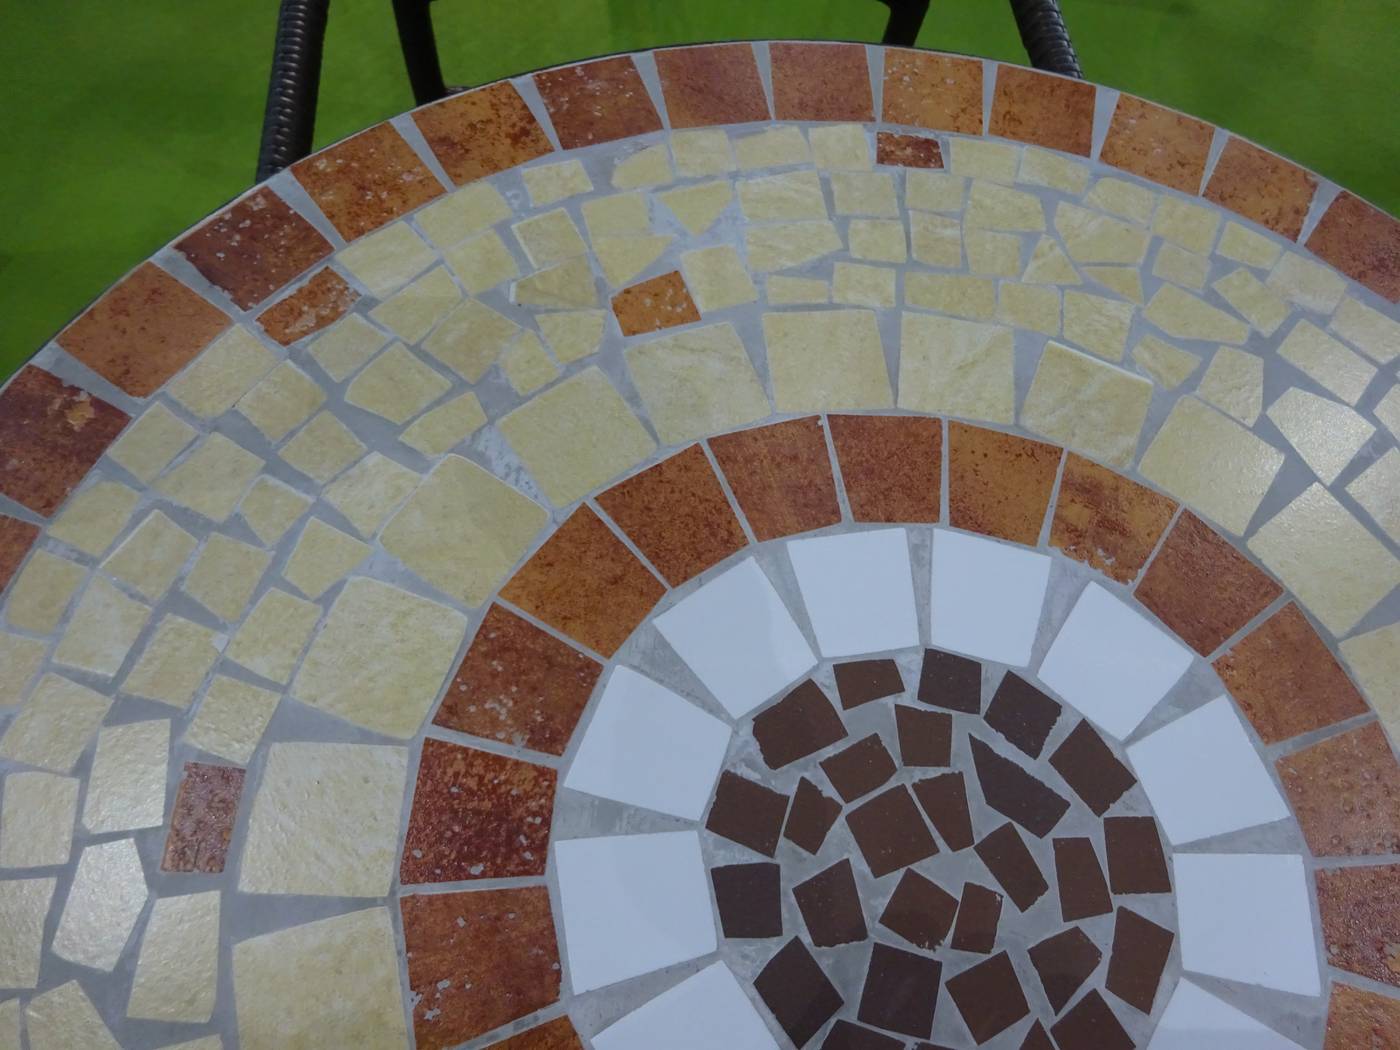 Conjunto Mosaico Claire-Brasil 75-4 - Conjunto para jardín y terraza de acero: 1 mesa de acero forjado con panel mosaico + 4 sillones de wicker reforzado